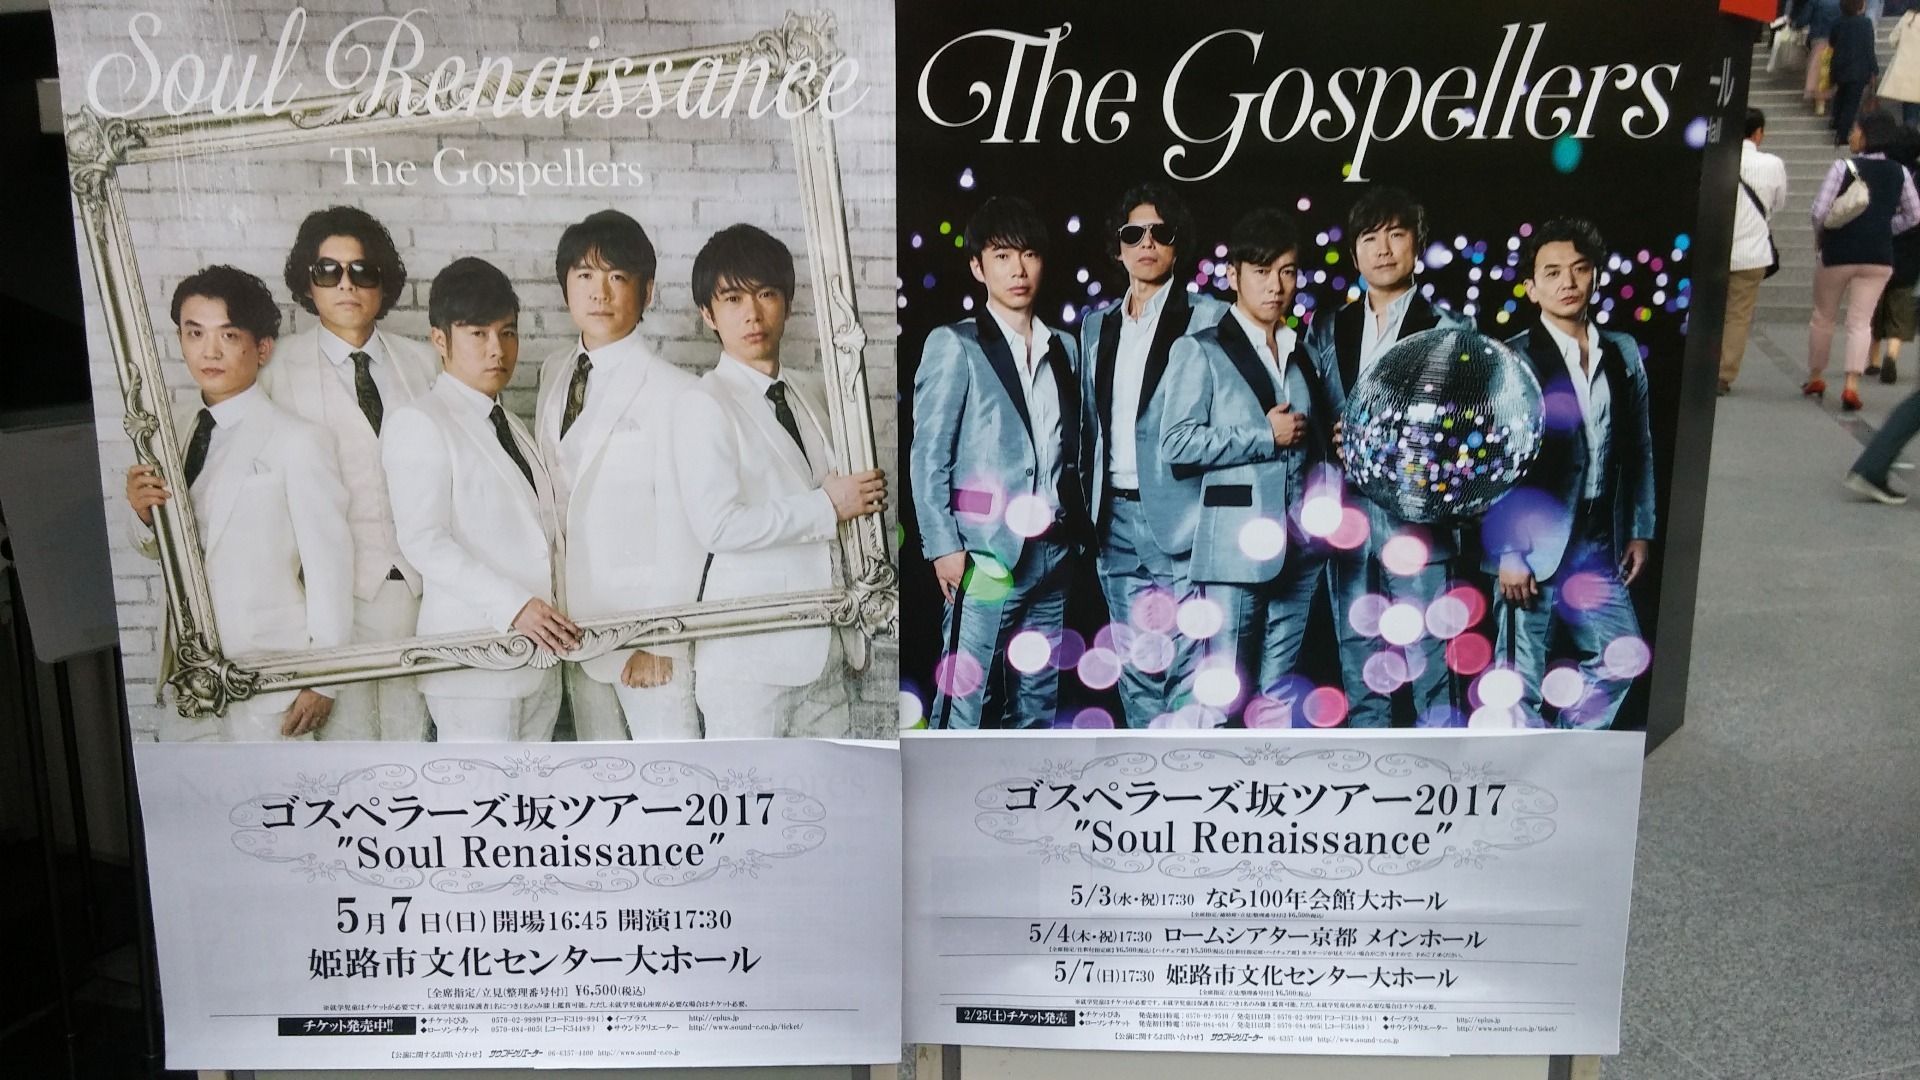 ゴスペラーズ坂ツアー2017 Soul Renaissance ネタバレ in 奈良